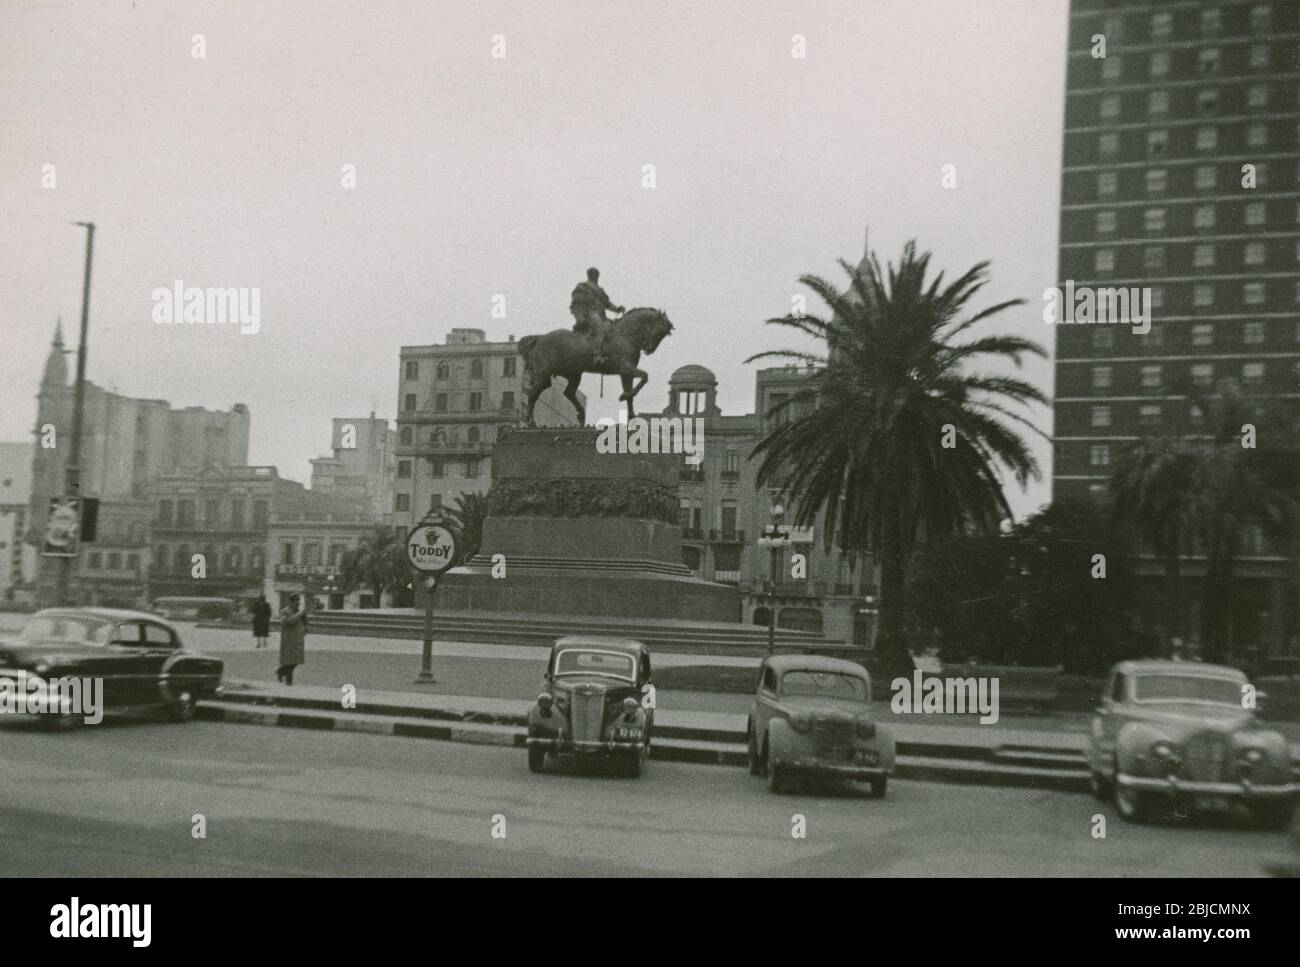 Photo ancienne, « Plaza Independencia, Montevideo, 4 et 5 juillet 1955 » avec la statue de José Gervasio Artigas au-dessus du mausolée Artigas. Pris par un passager écorché d'un bateau de croisière. SOURCE : PHOTO ORIGINALE Banque D'Images